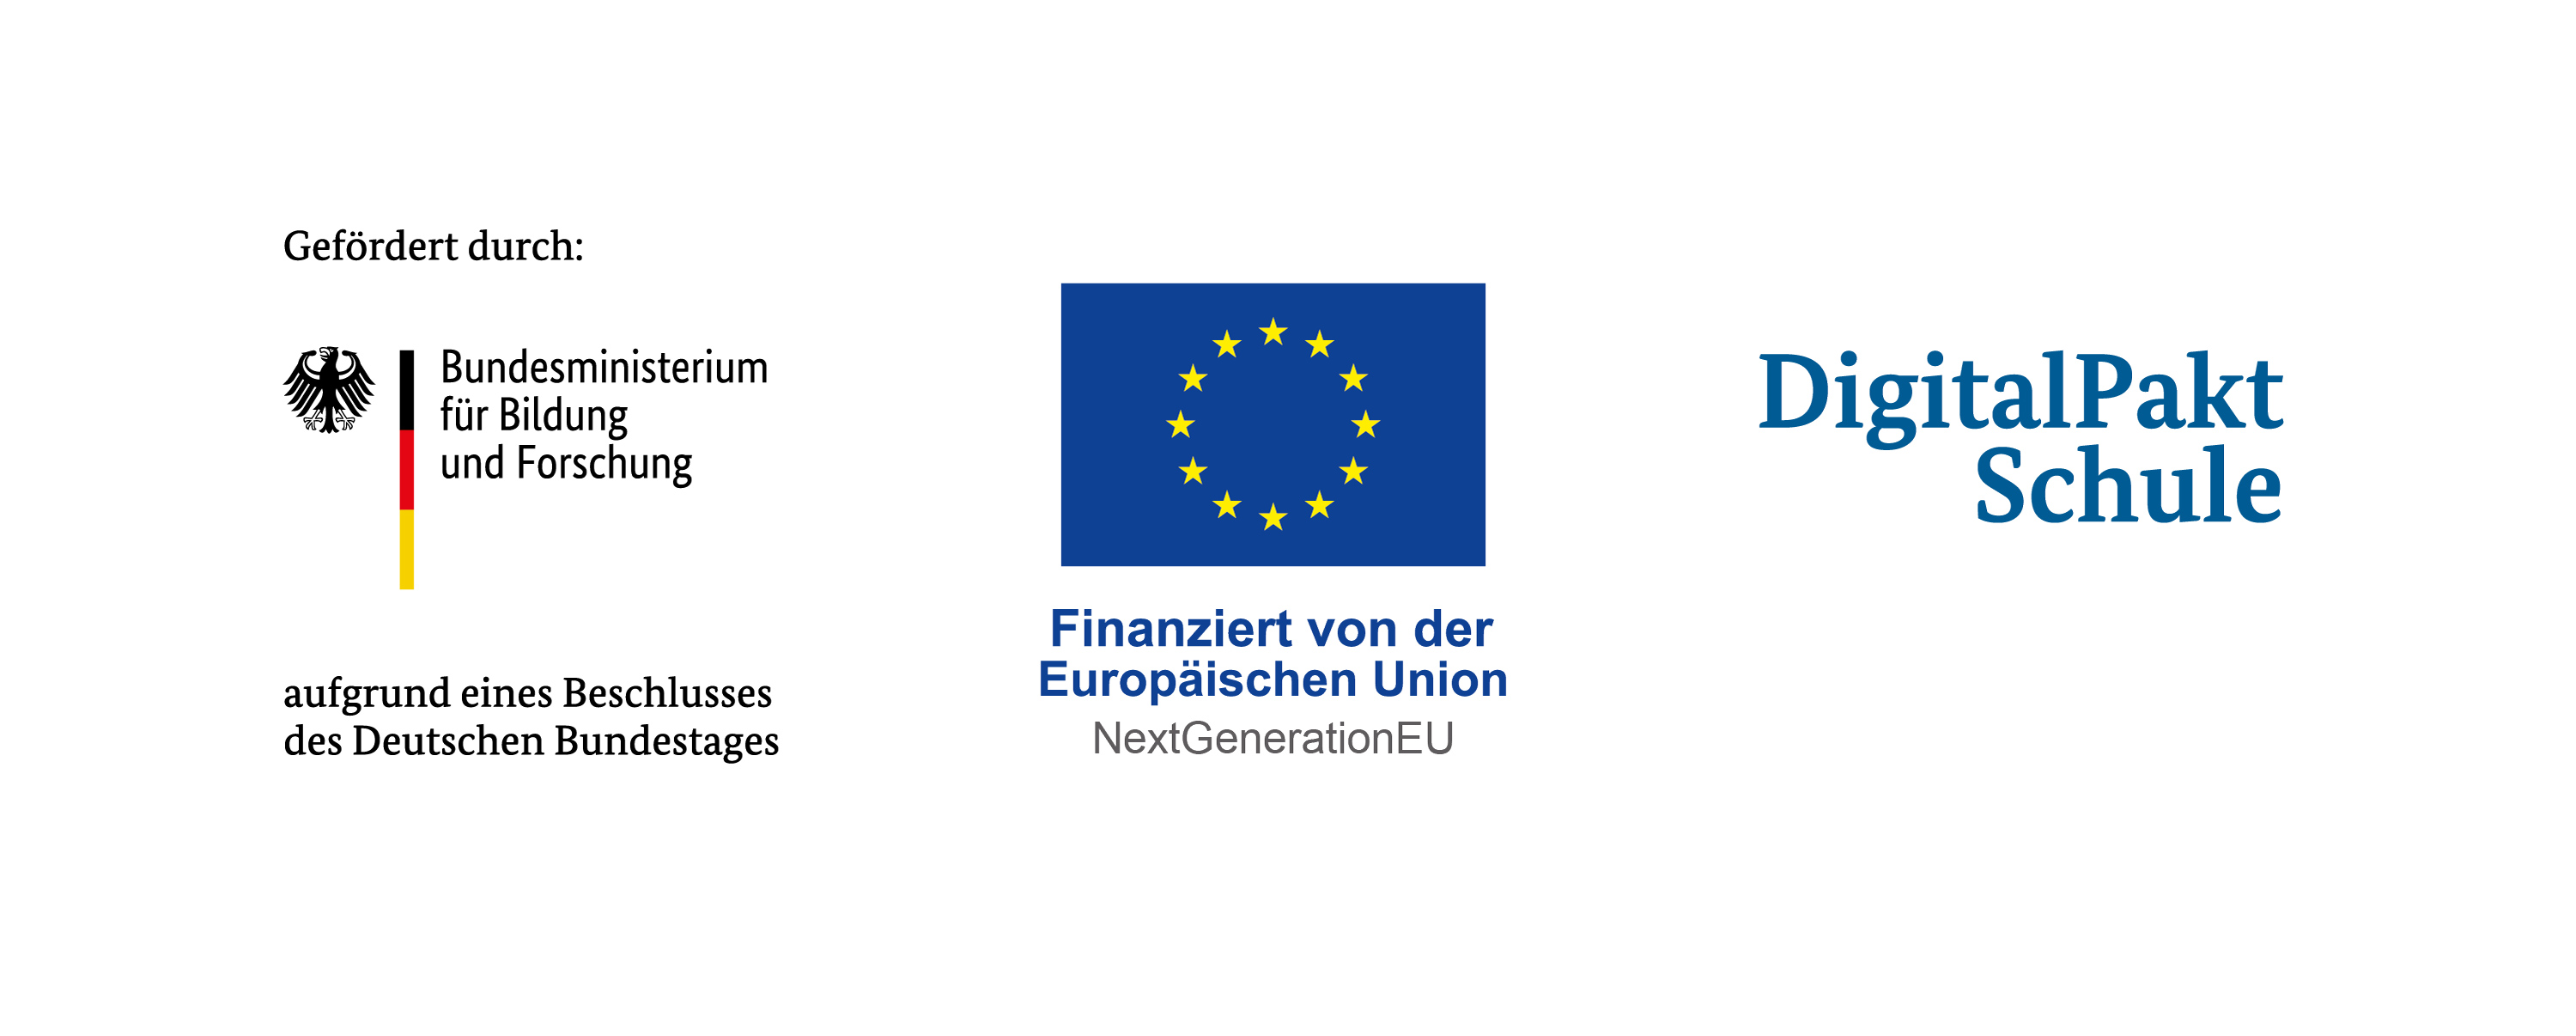 Drei Logos auf weißem Hintergrund: Gefördert durch Bundesministerium für Bildung und Forschung, finanziert von der Europäischen Union, DigitalPakt Schule